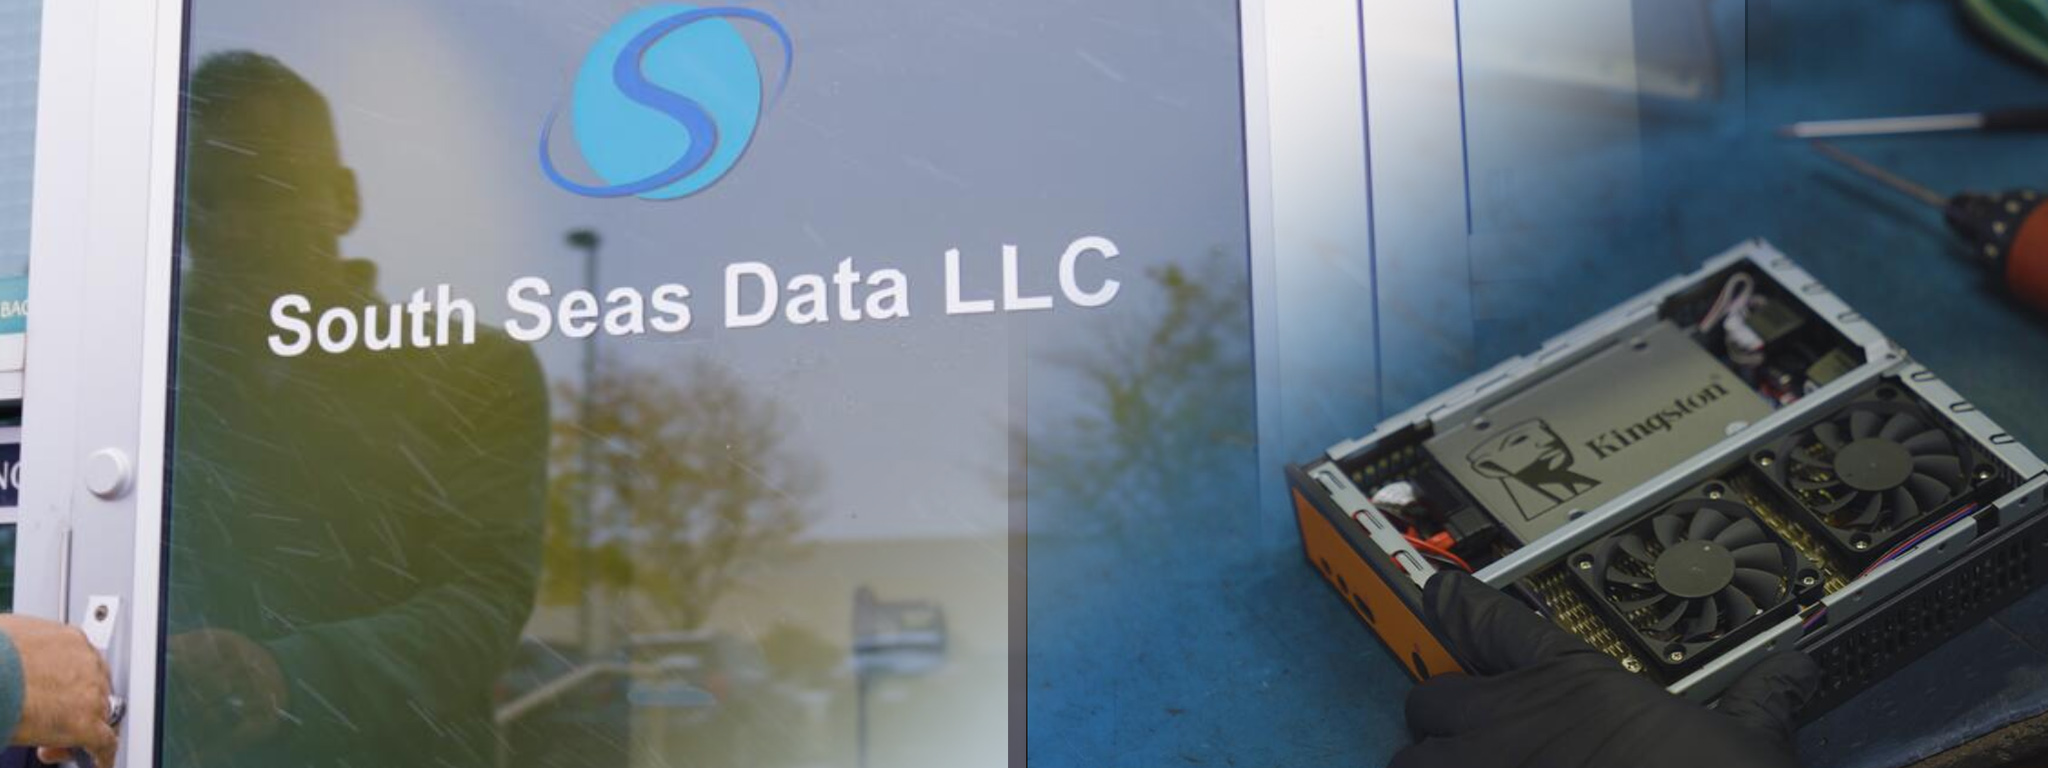 A porta da frente da sede da South Seas Data LLC, e uma imagem sobreposta de um sistema com destaque para um SSD Kingston.